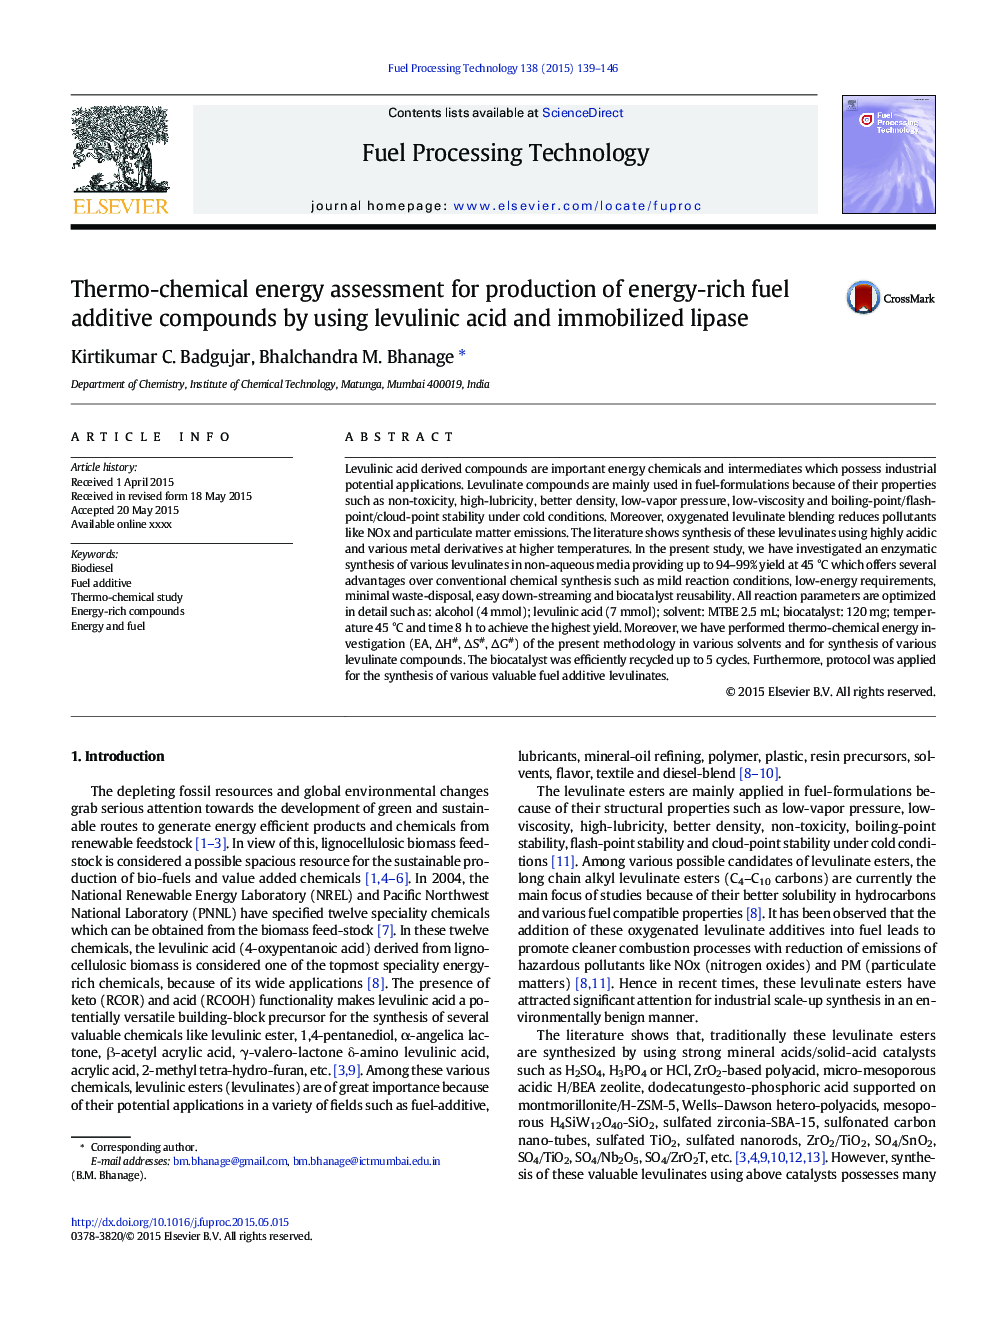 ارزیابی انرژی حرارتی برای تولید ترکیبات افزودنی سوختی غنی از انرژی با استفاده از اسید لولولینیک و لیپاز ایمن شده 